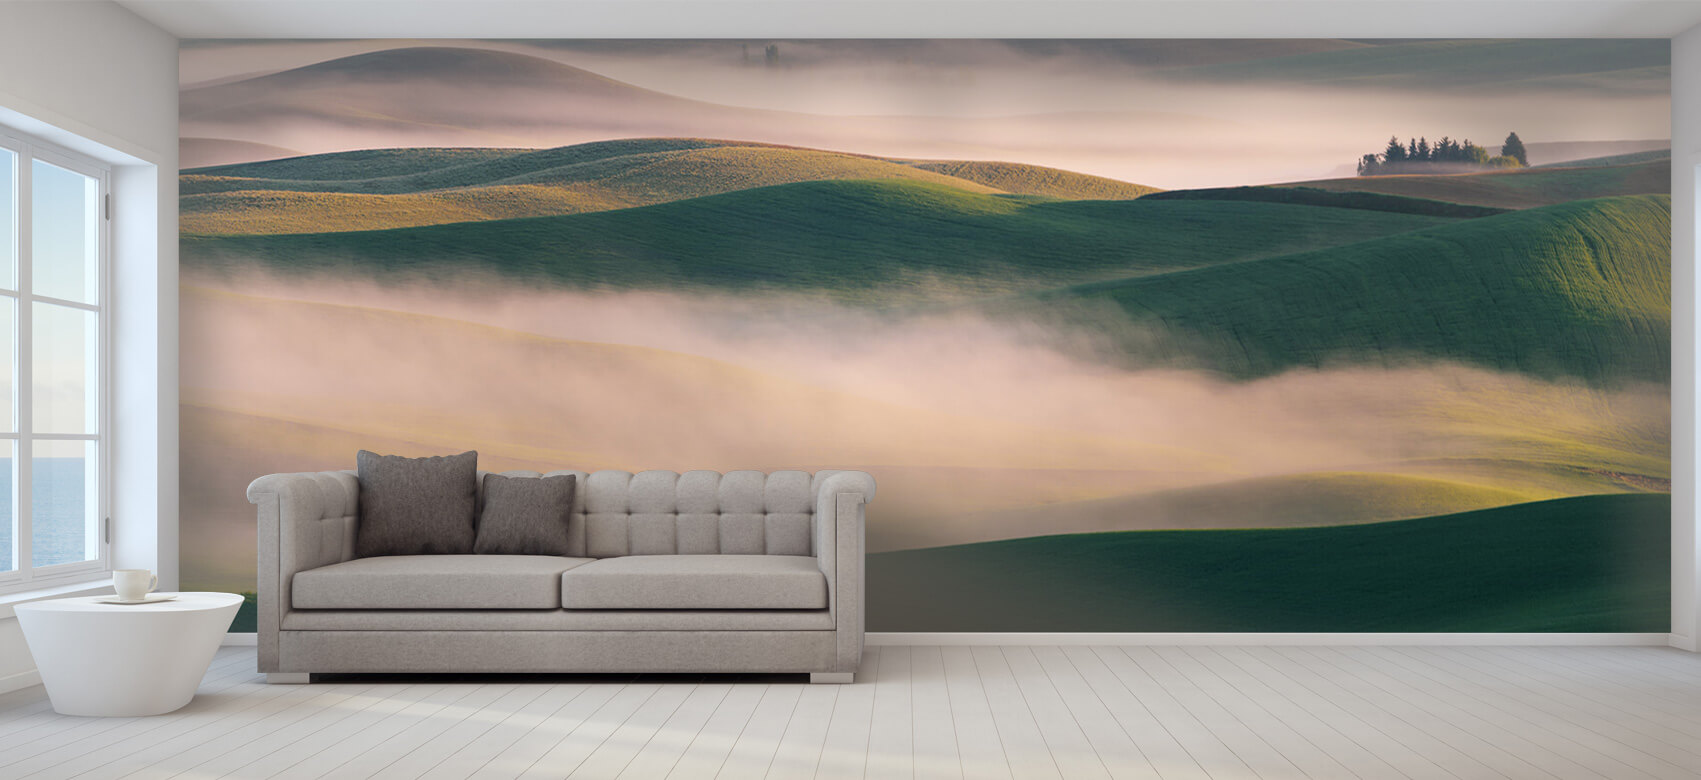 Landschap Papel pintado con El país de los sueños en la niebla matinal - Salón 8